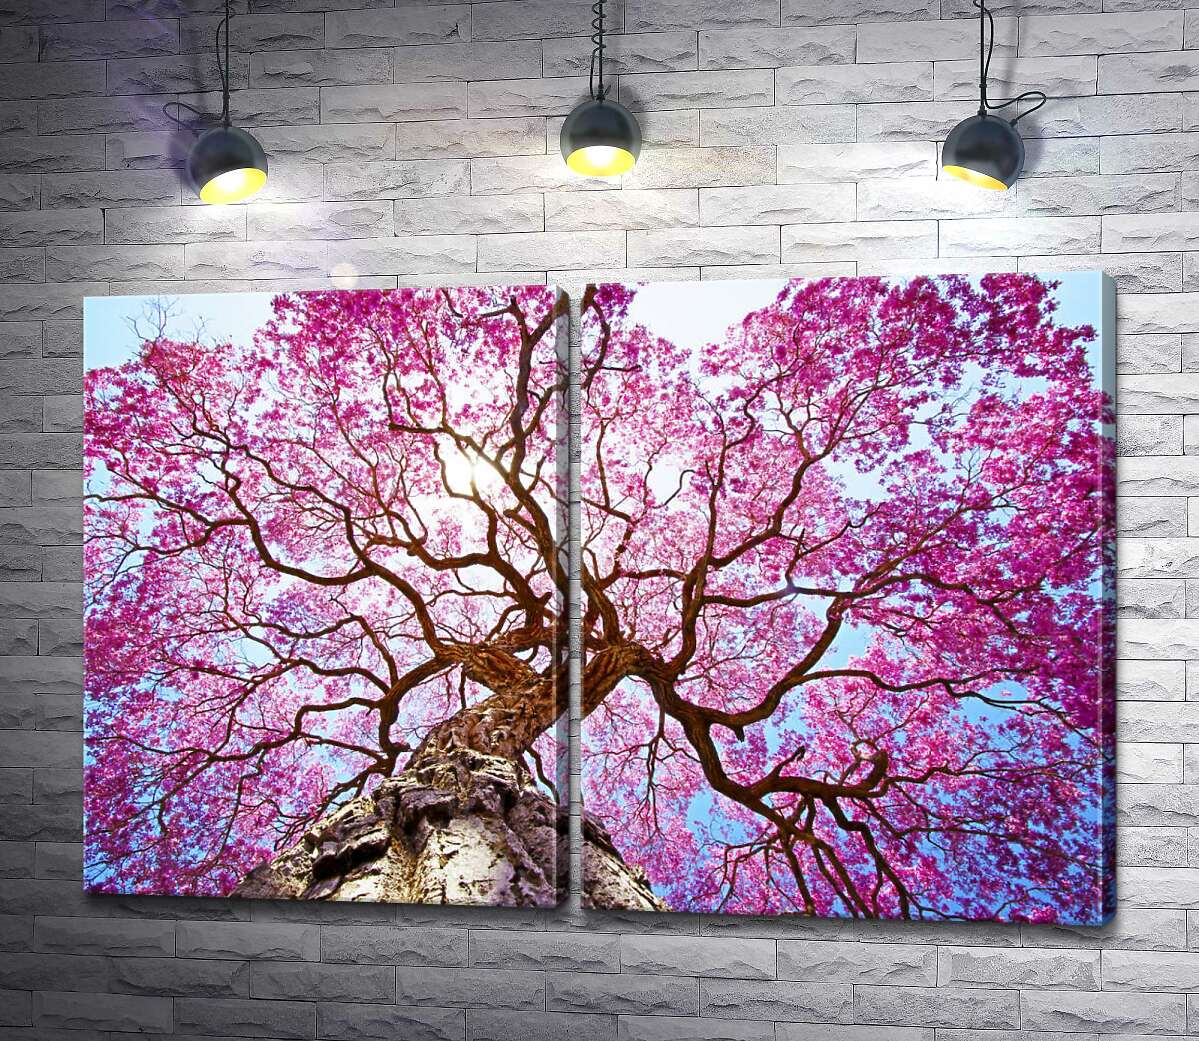 модульная картина Густая крона высокого дерева покрыта розовым цветением